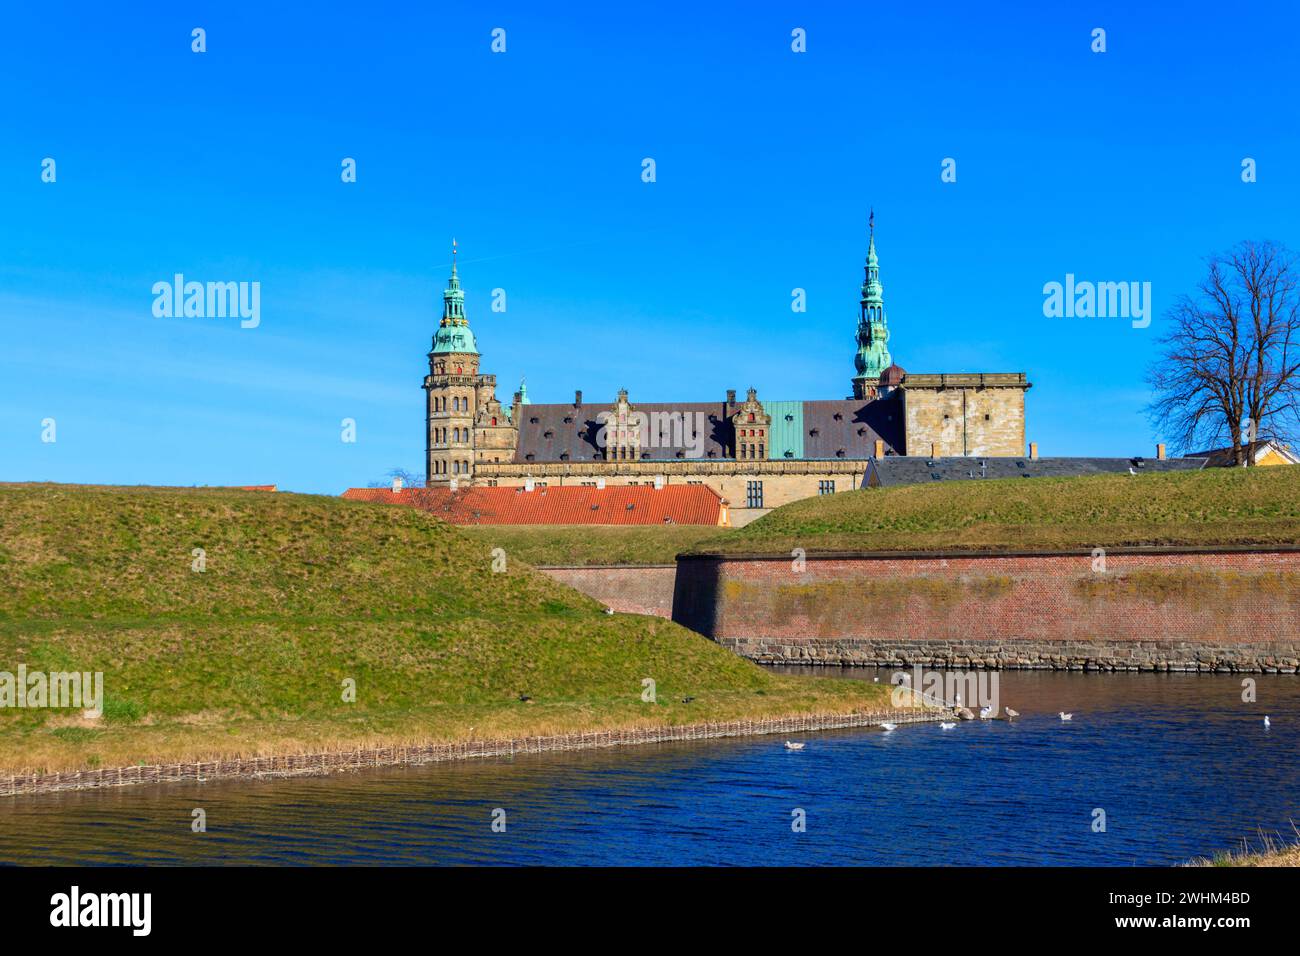 Veduta del Castello di Kronborg e dello stretto di Oresund a Helsingor (Elsinore), Danimarca Foto Stock